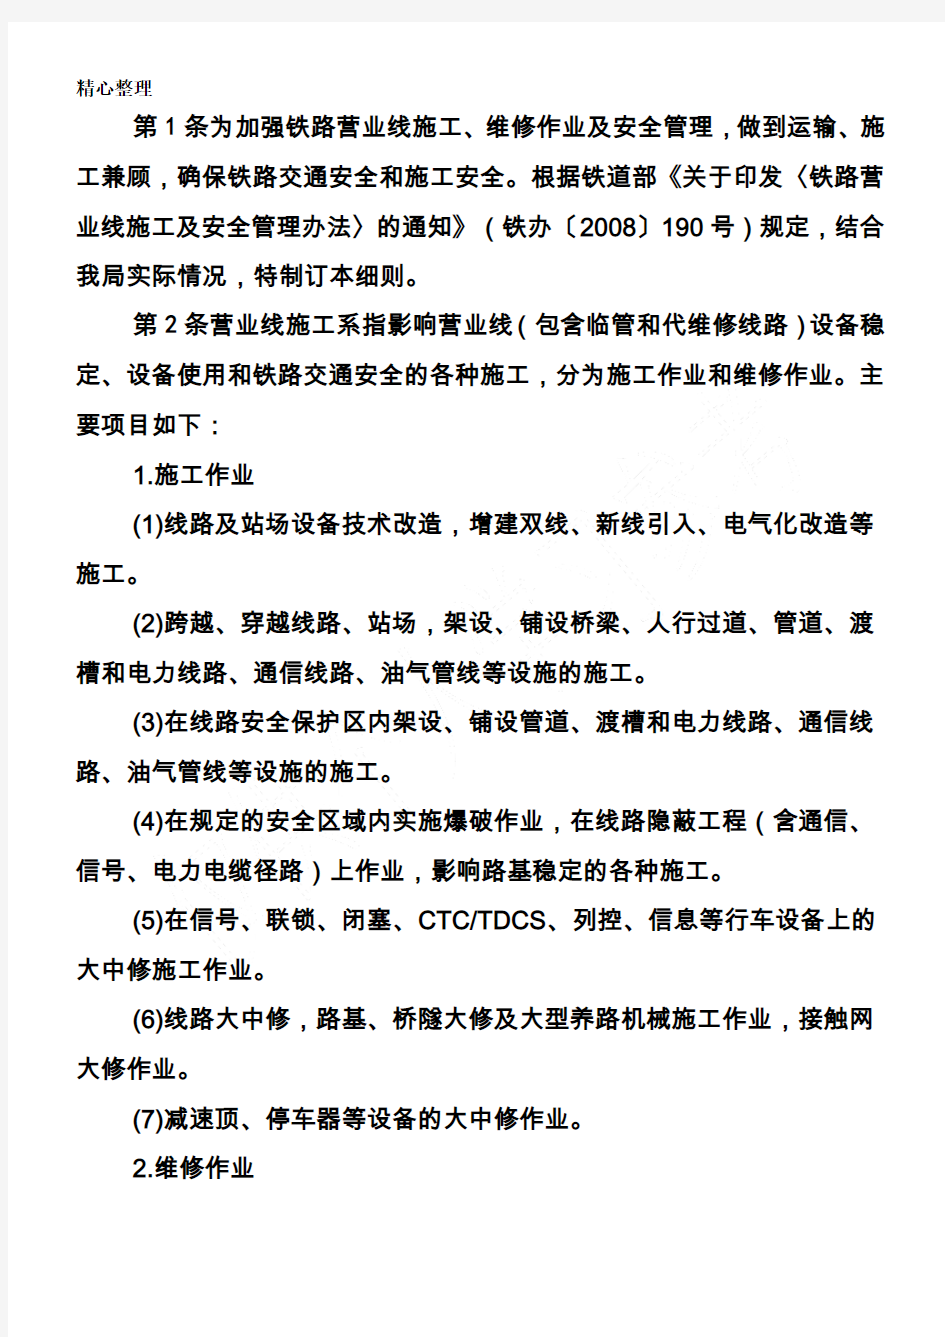 郑州铁路局营业线施工及安全管理实施细则(237号文件)